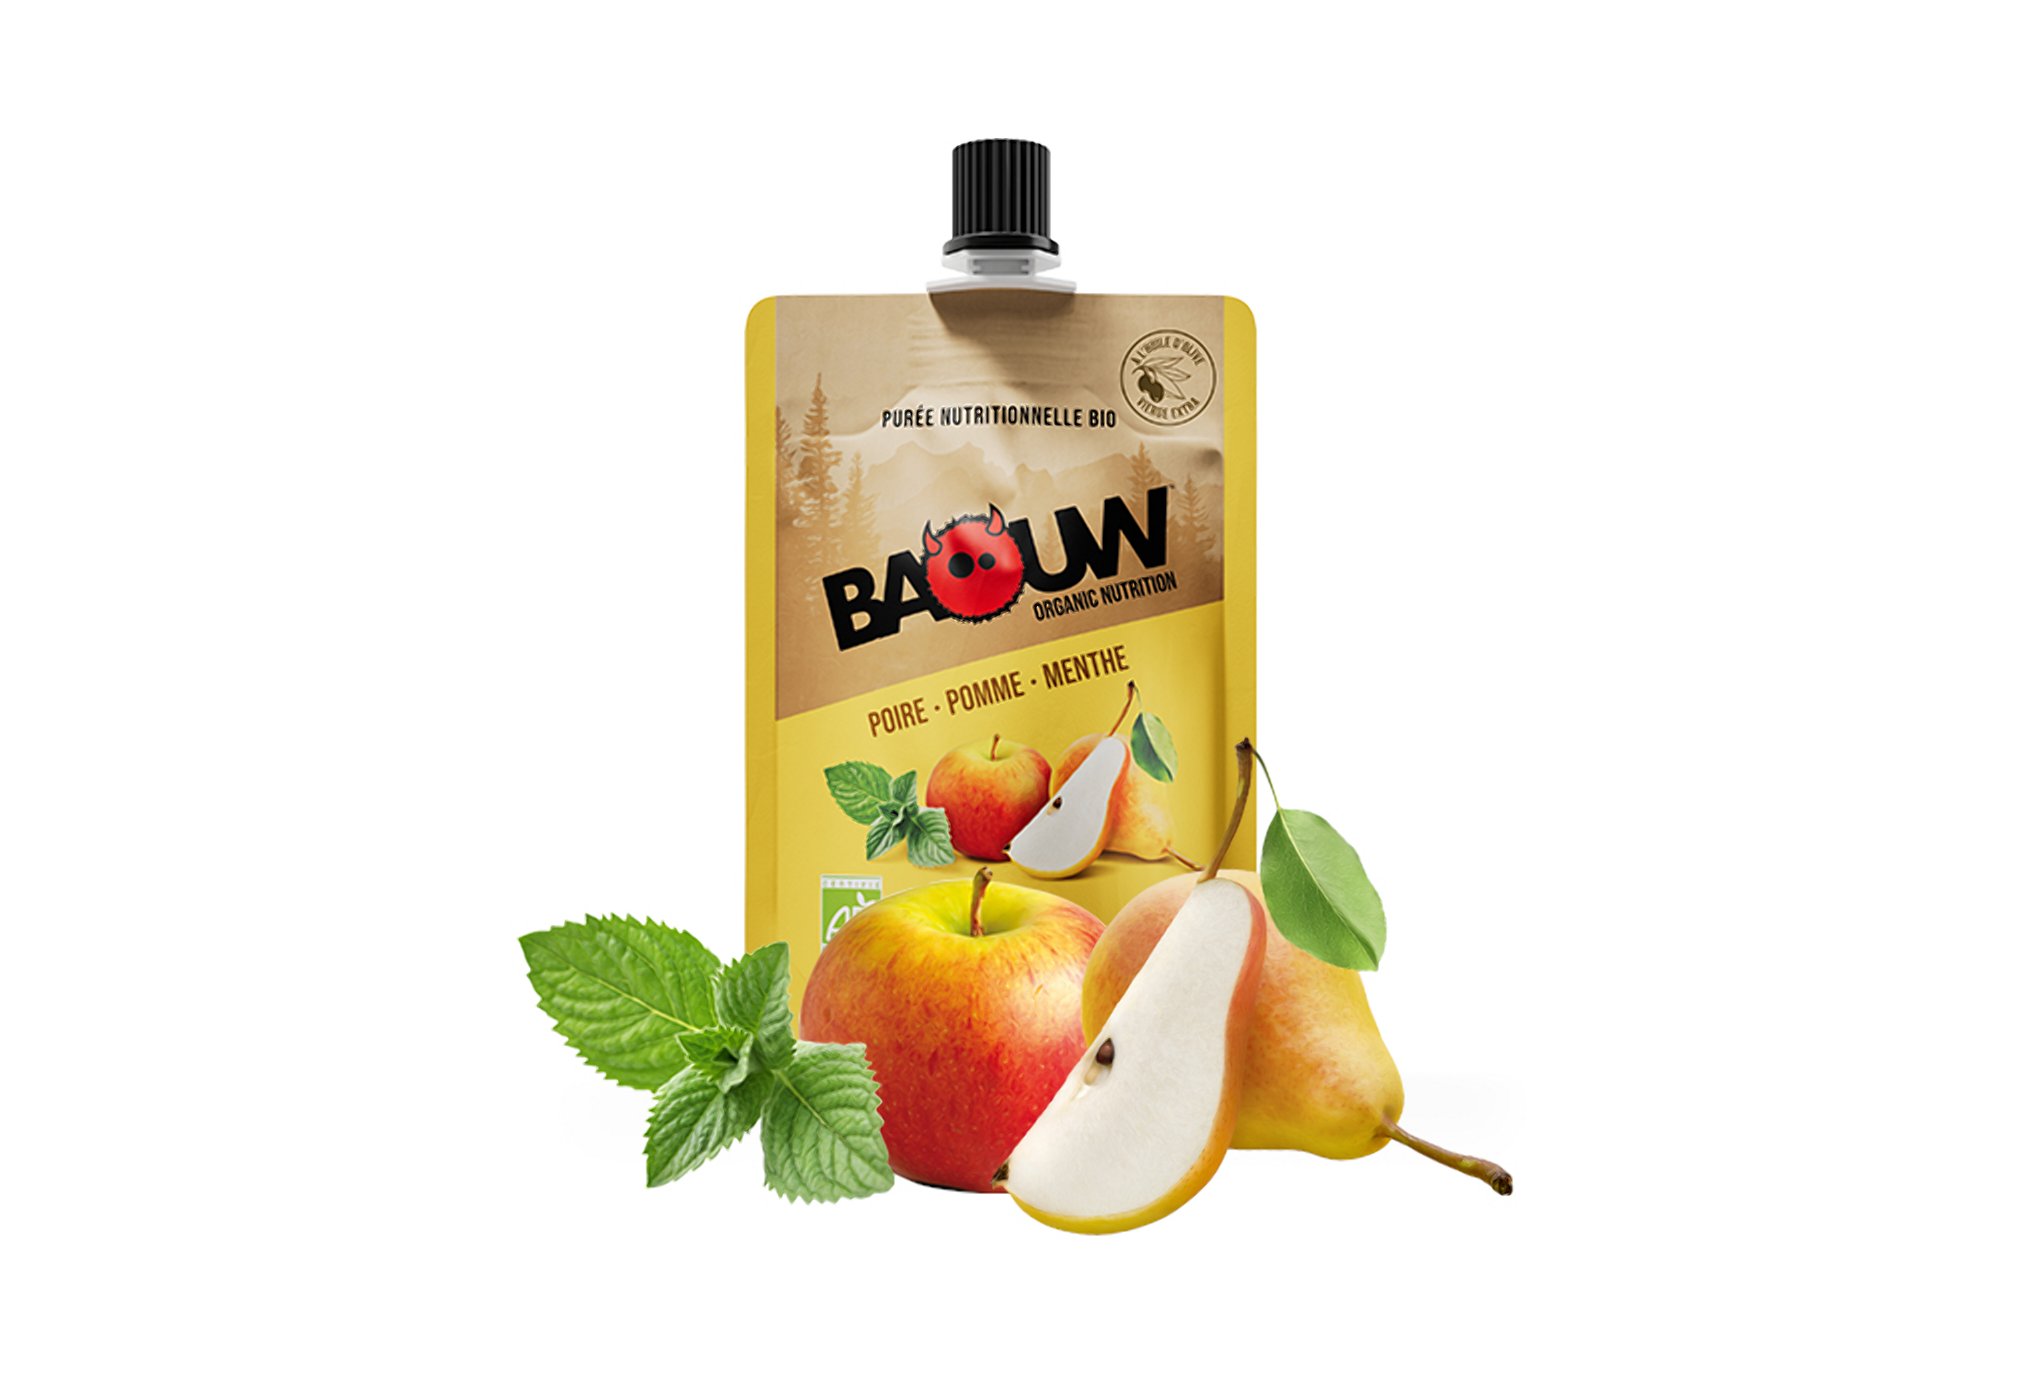 Baouw Purée nutritionnelle bio - Poire - Pomme - Menthe Diététique Gels